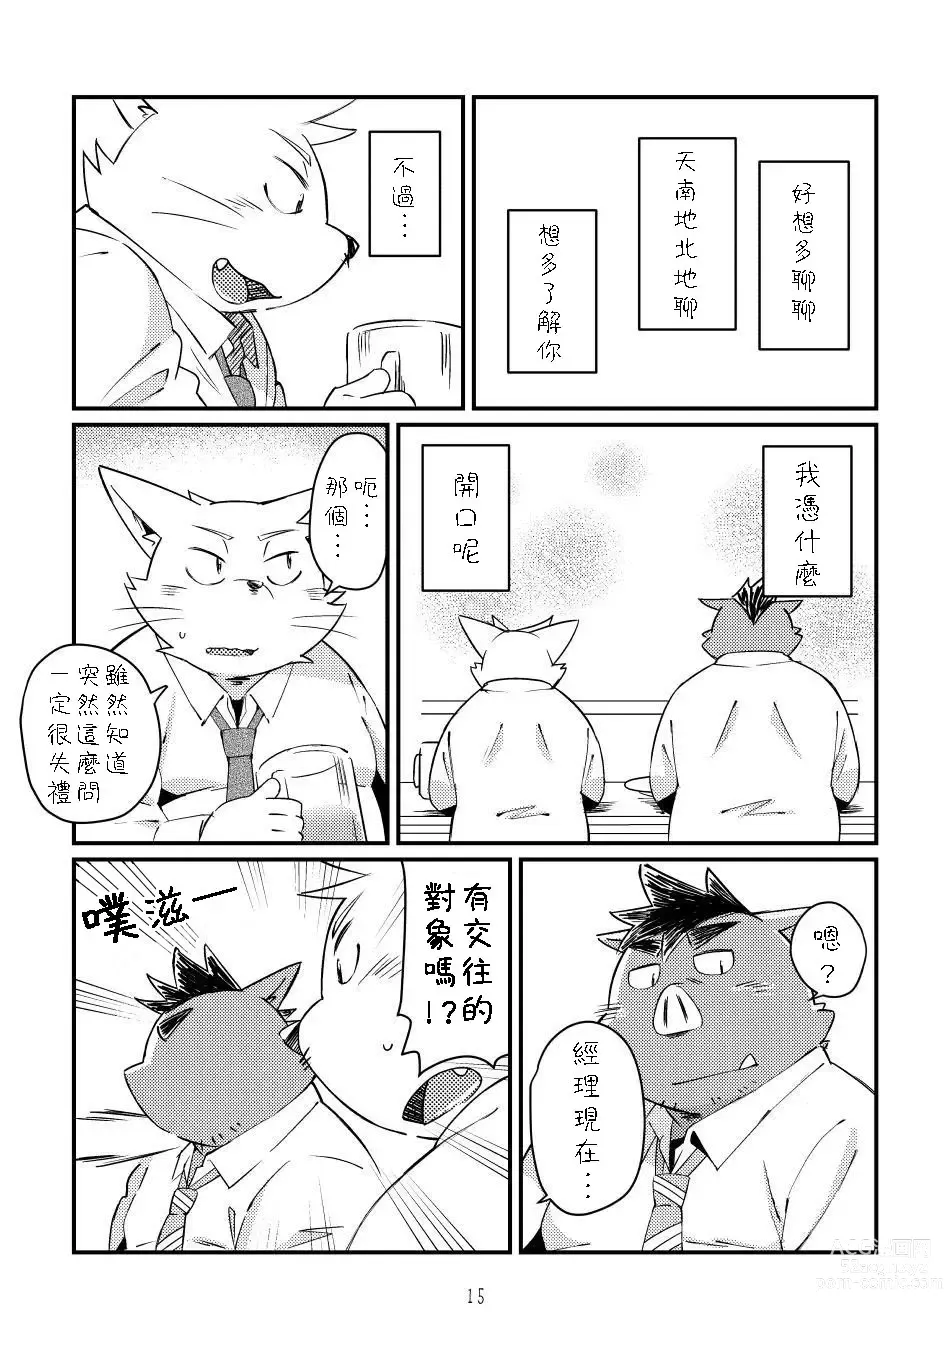 Page 14 of doujinshi Ikawa buchou to Inoue-kun to.